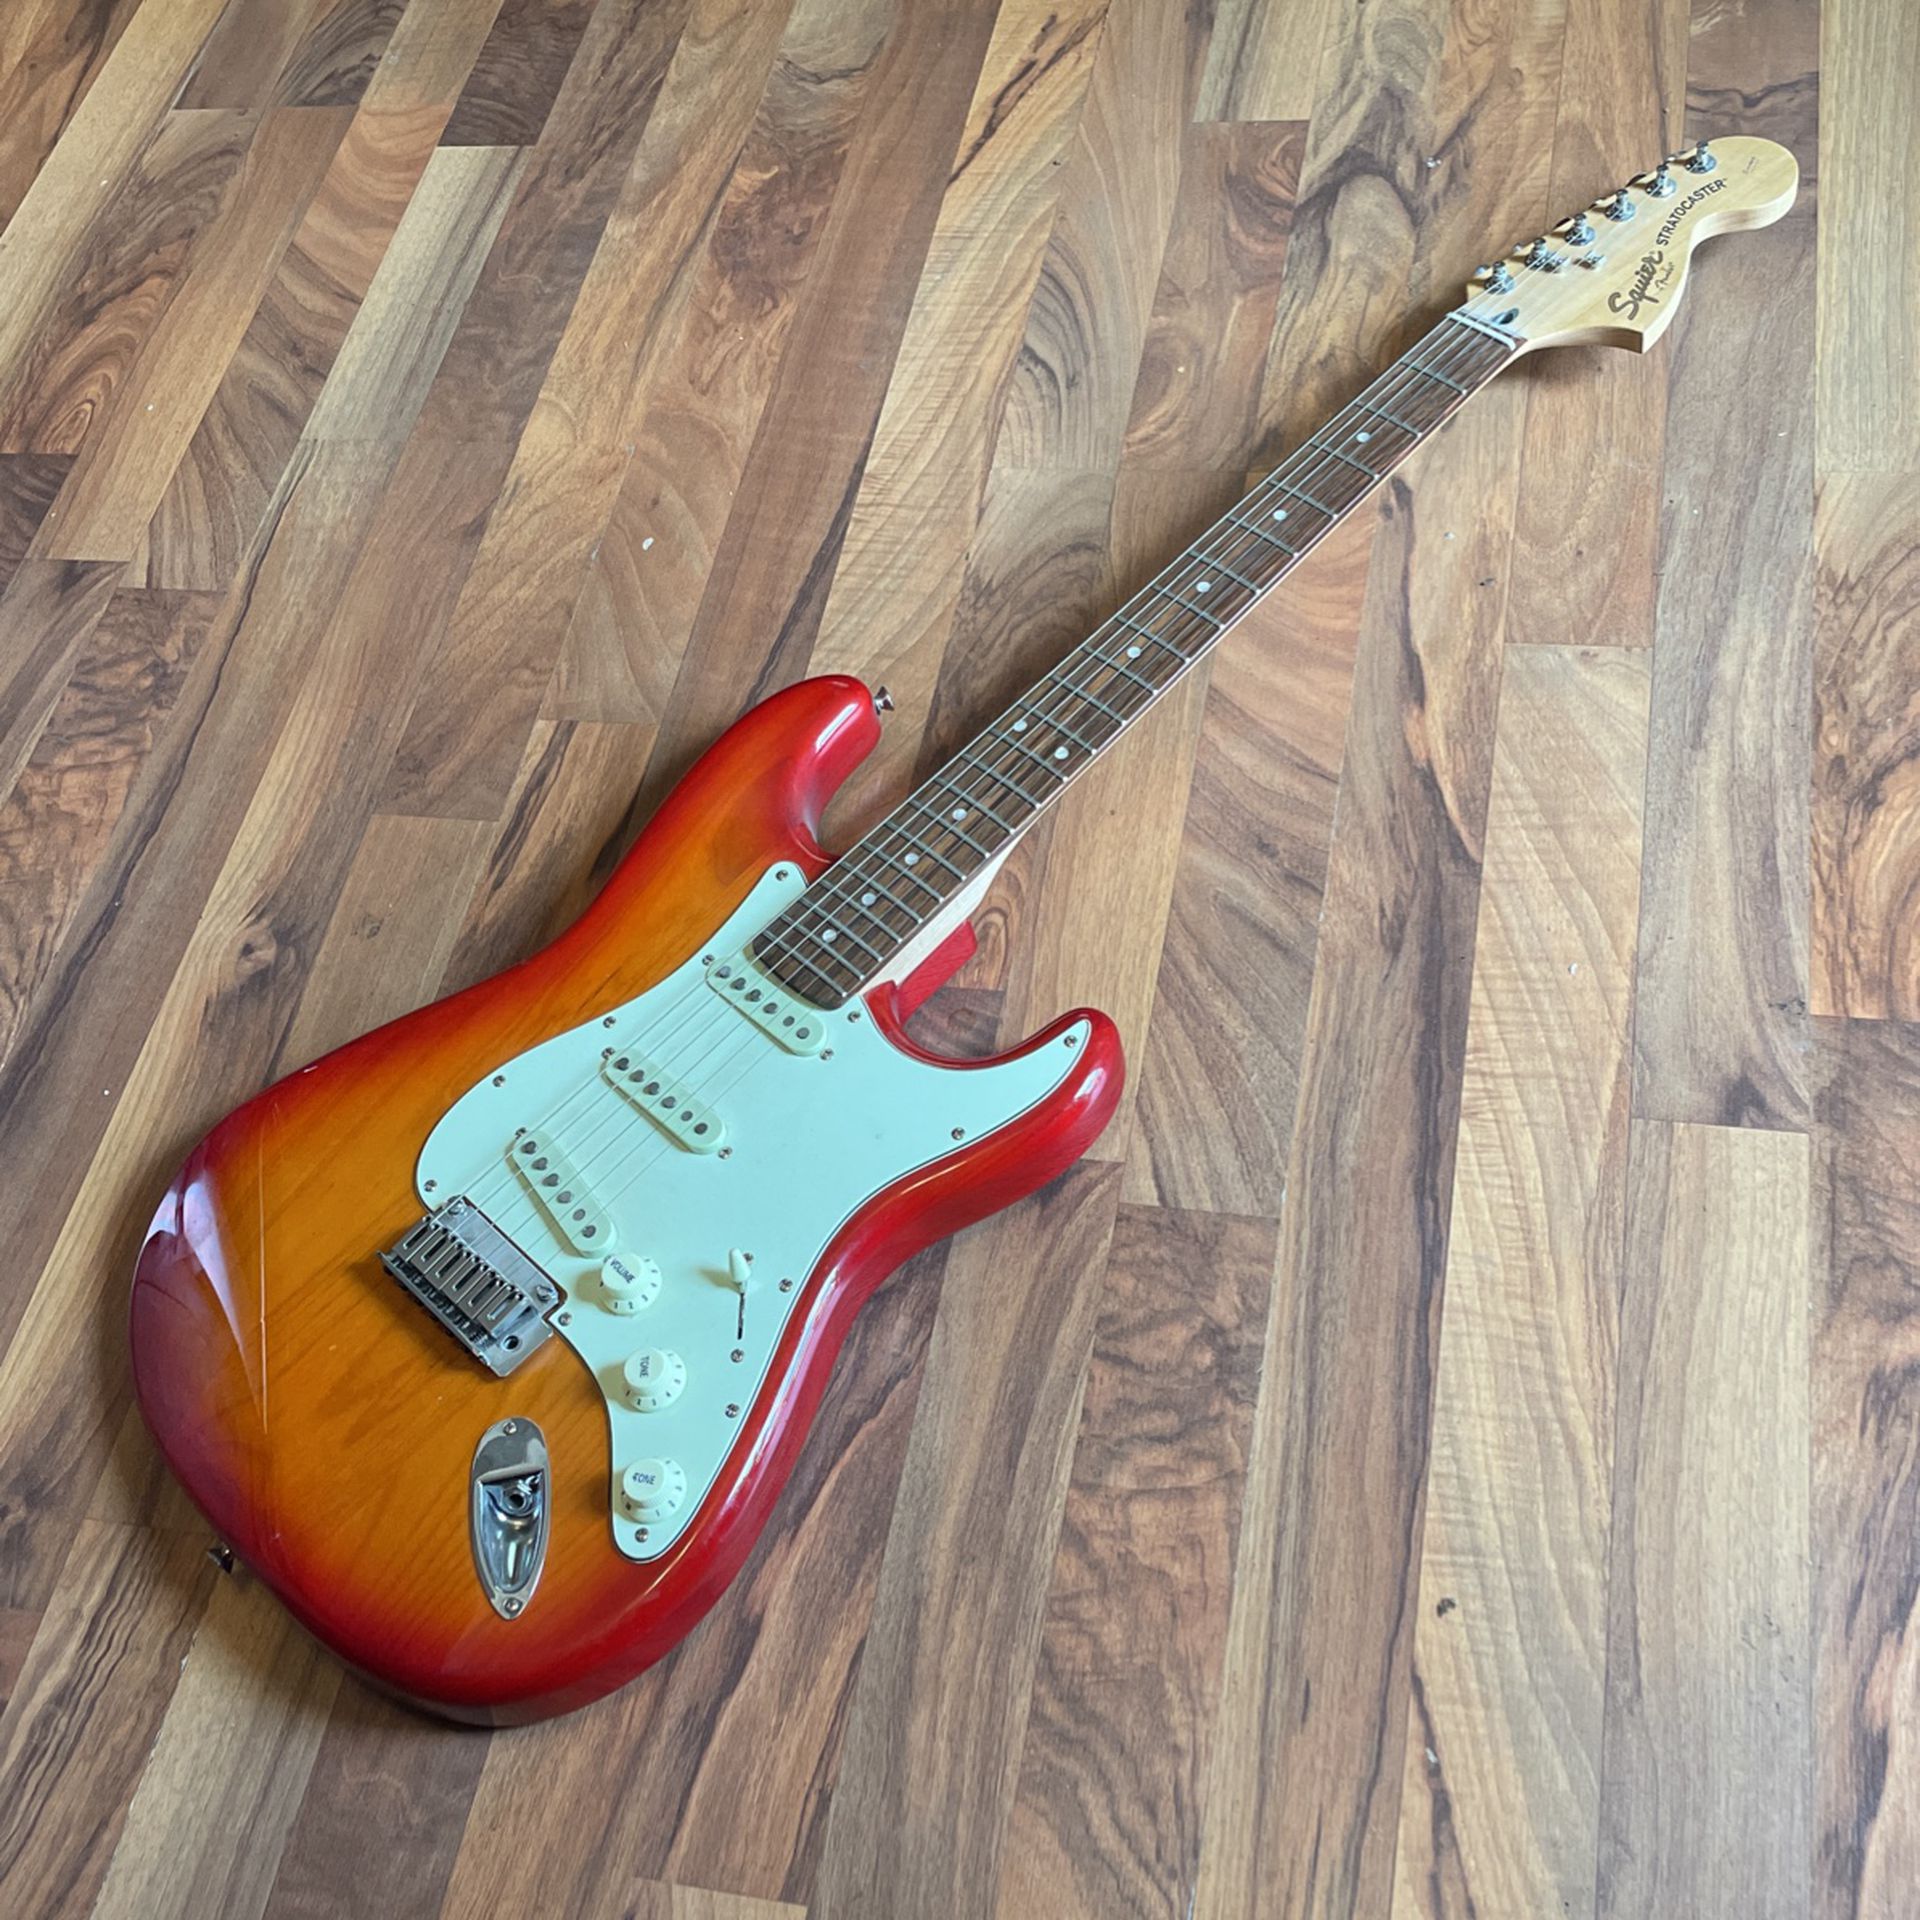 Fender Stratocaster Maple Sunburst Mint Shape 150.00 Firm